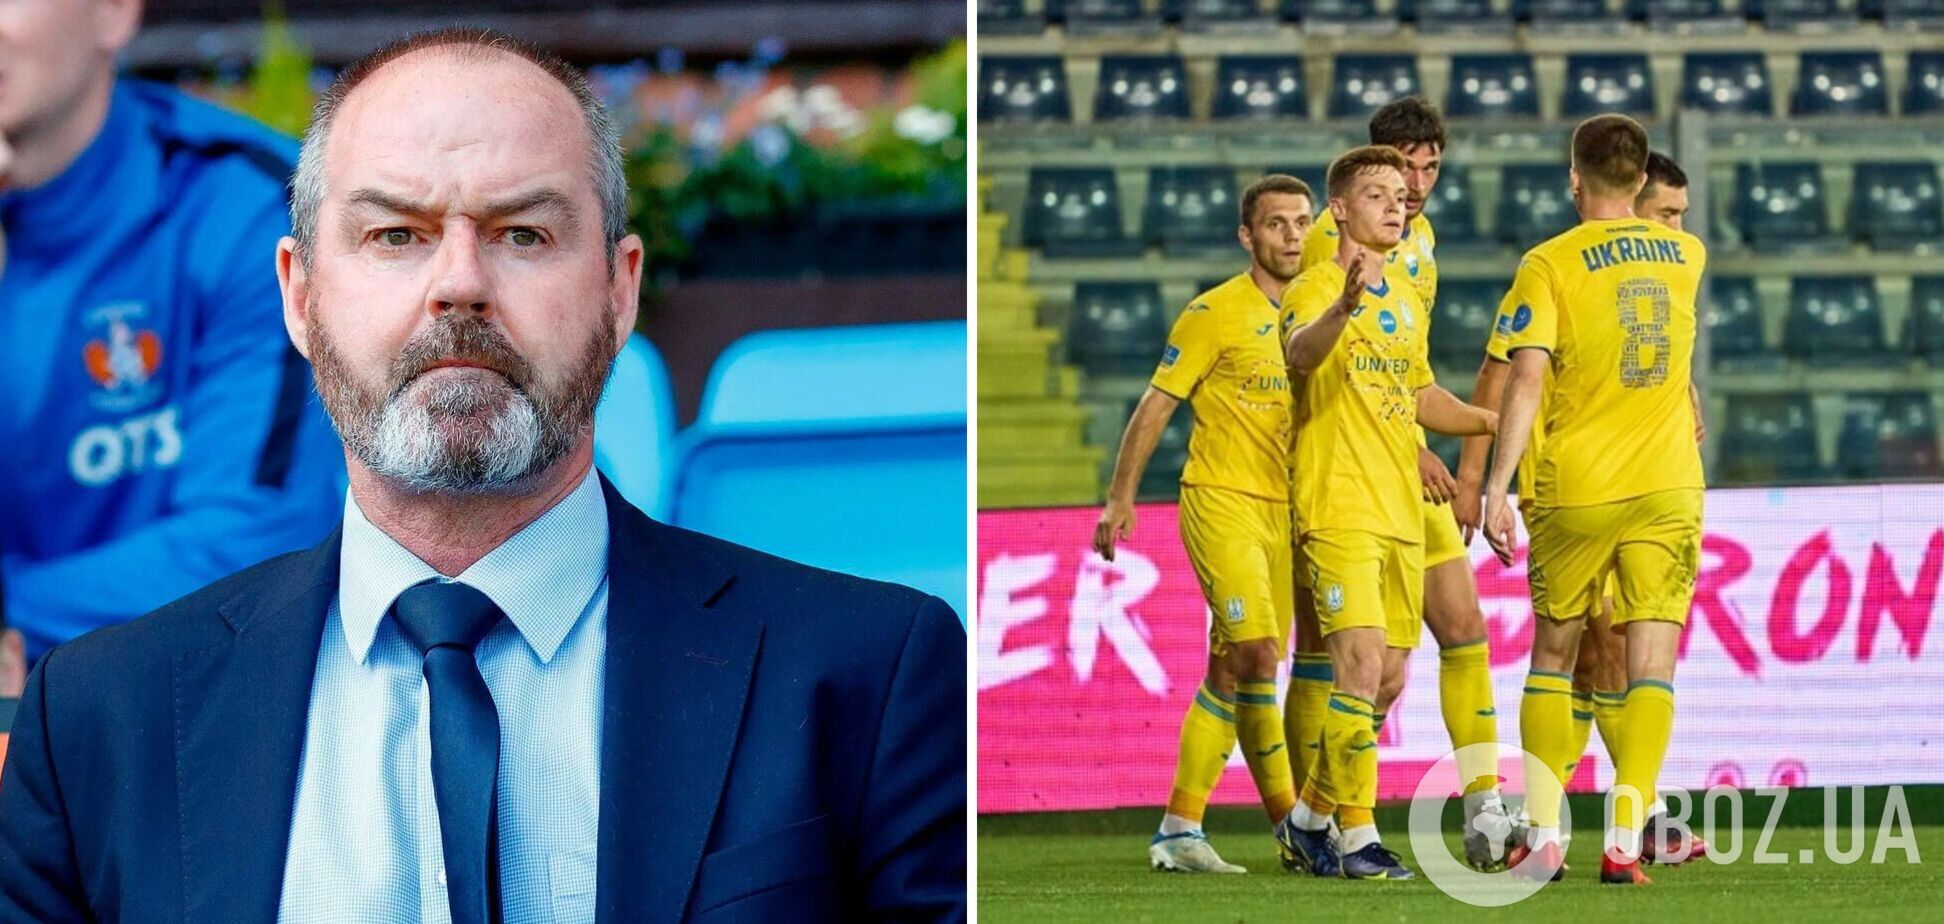 Тренер Шотландии заявил, что рад за украинцев накануне матча плей-офф ЧМ-2022